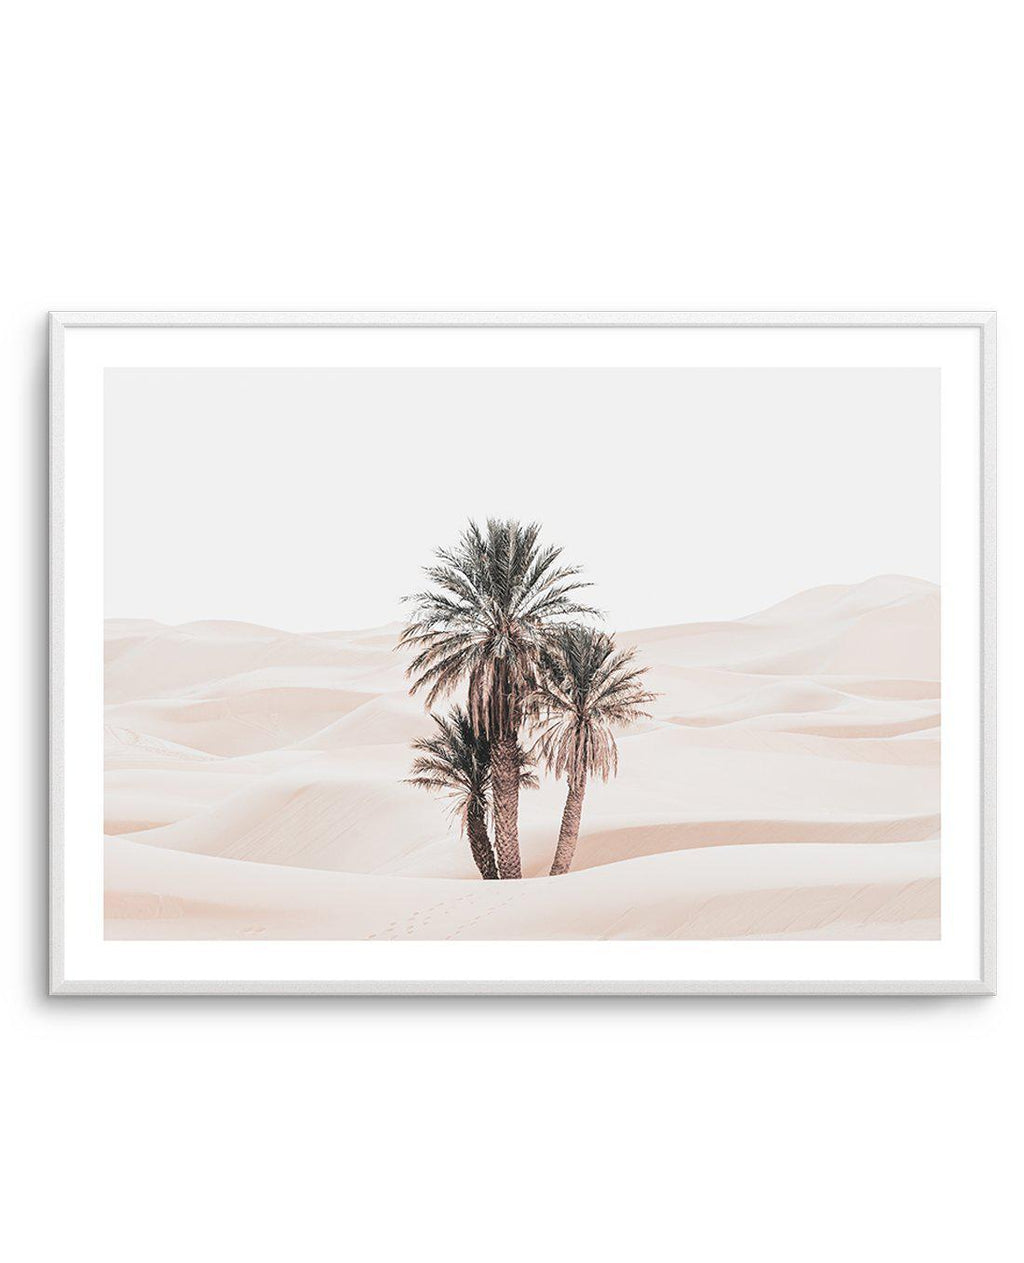 Buy Desert Hues Walk Wall Art Print